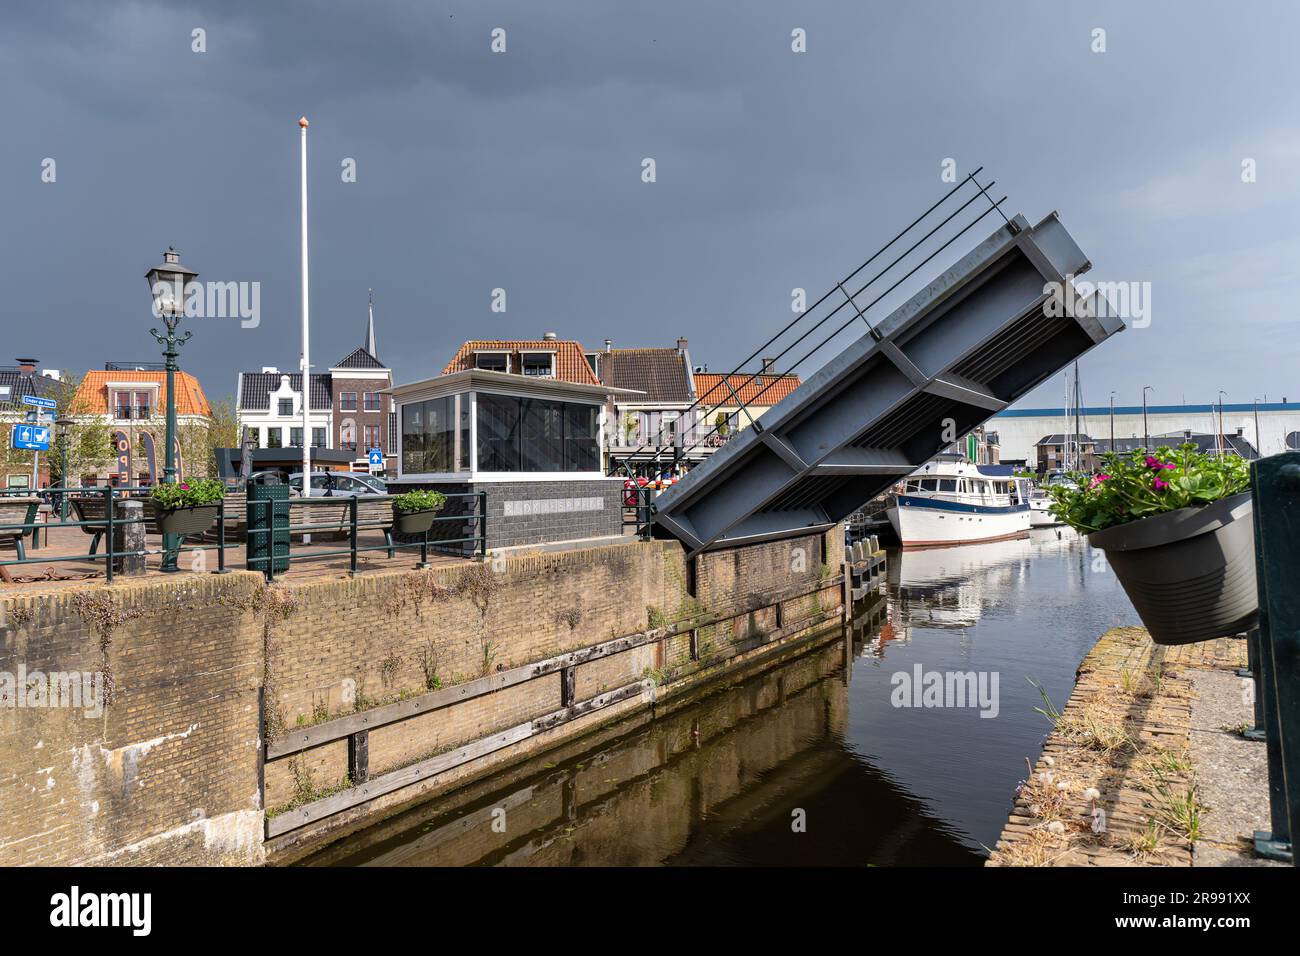 Blokjesbrug bridge in Lemmer, Netherlands Stock Photo